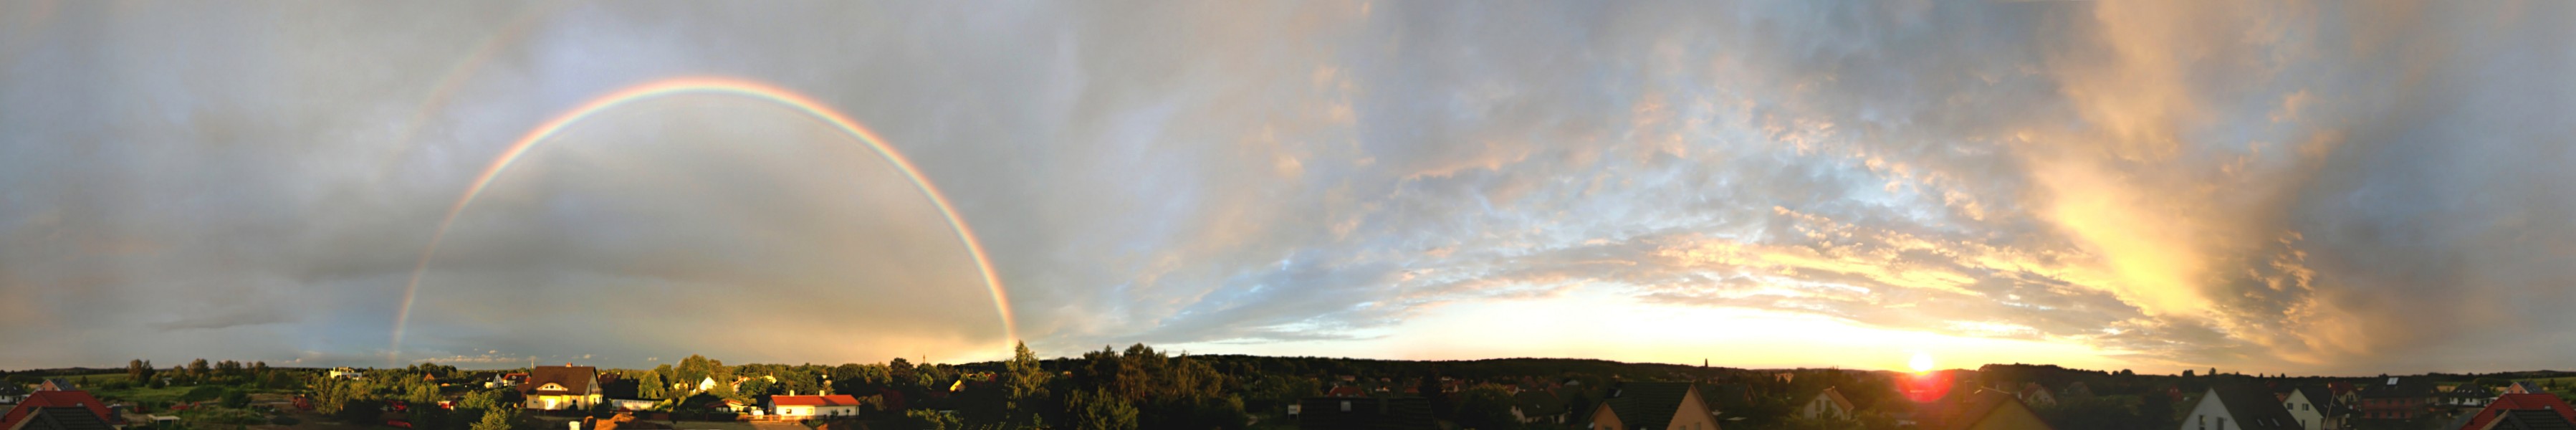 Im Panorama geht rechts die Sonne unter, links ist am Wolkehhimmel ein Regenbogen zu sehen.